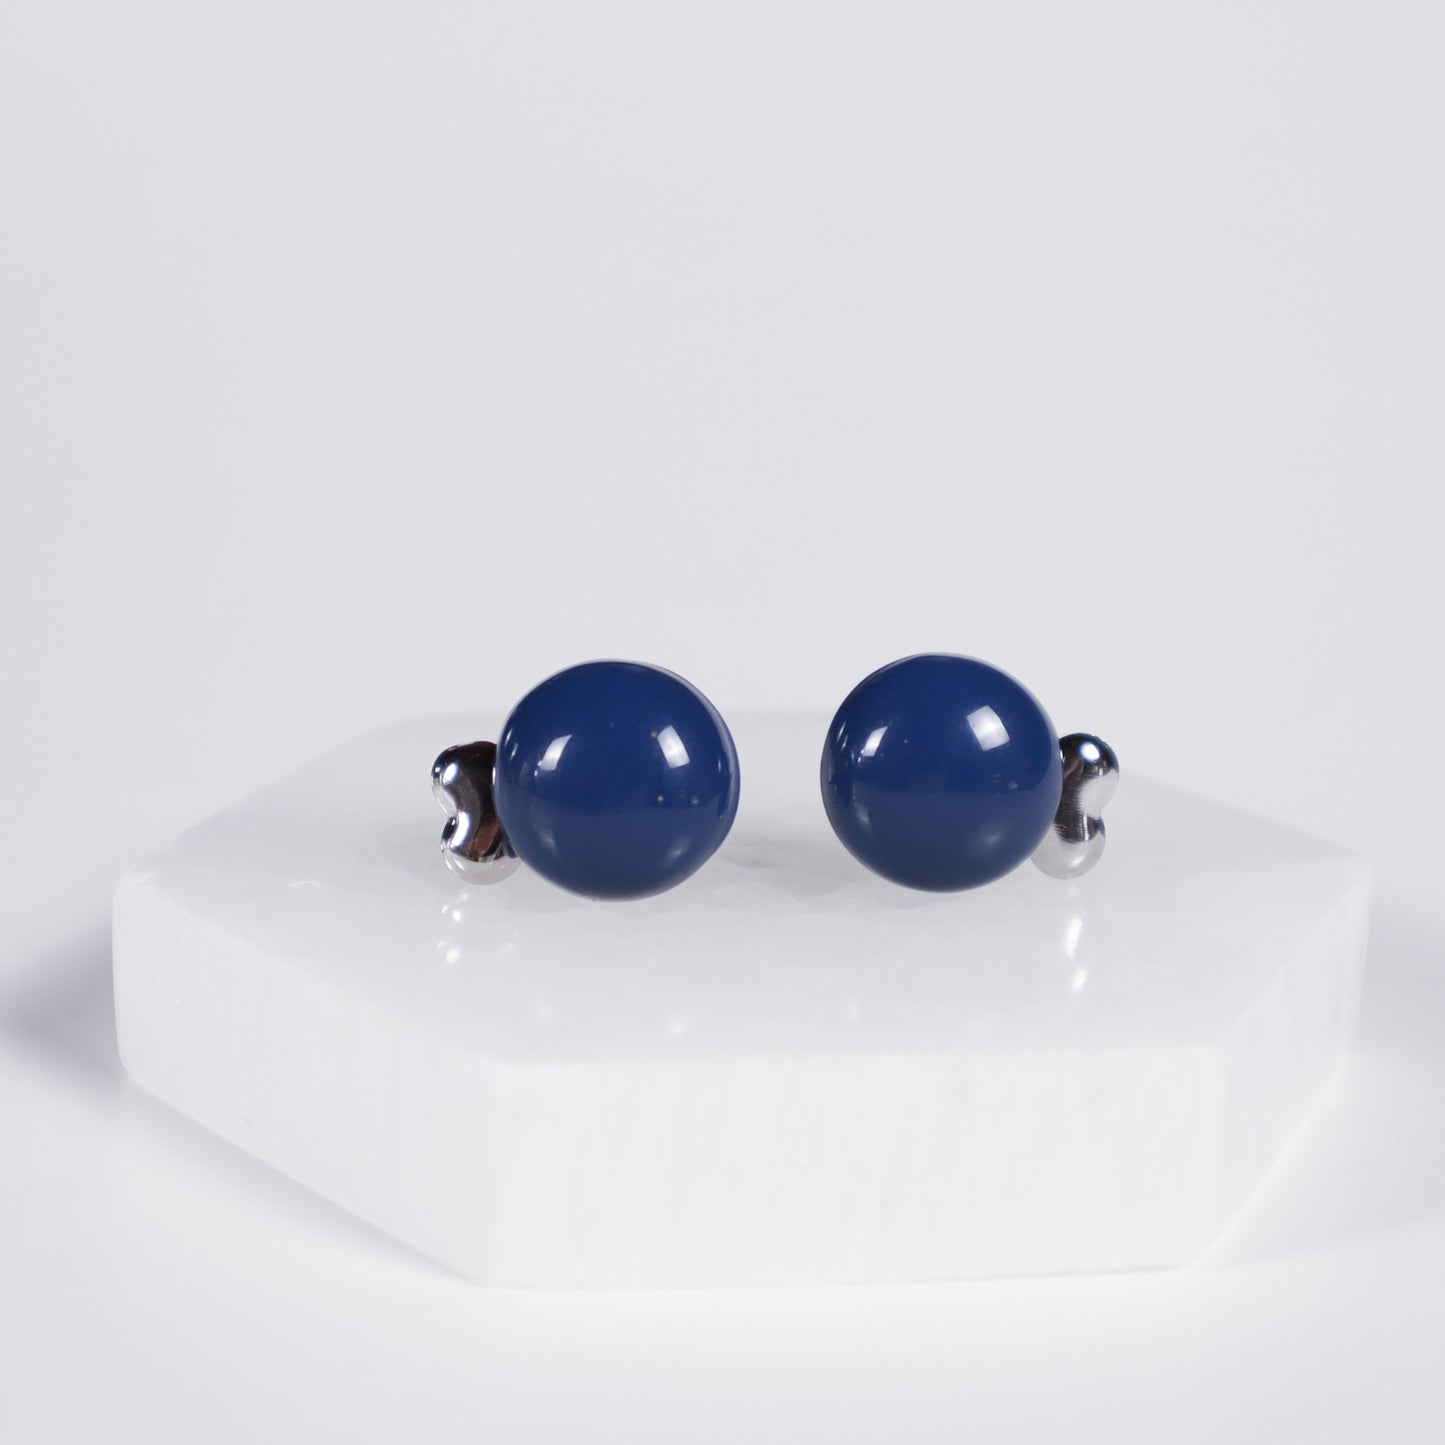 Mini Button Earrings - Navy Blue